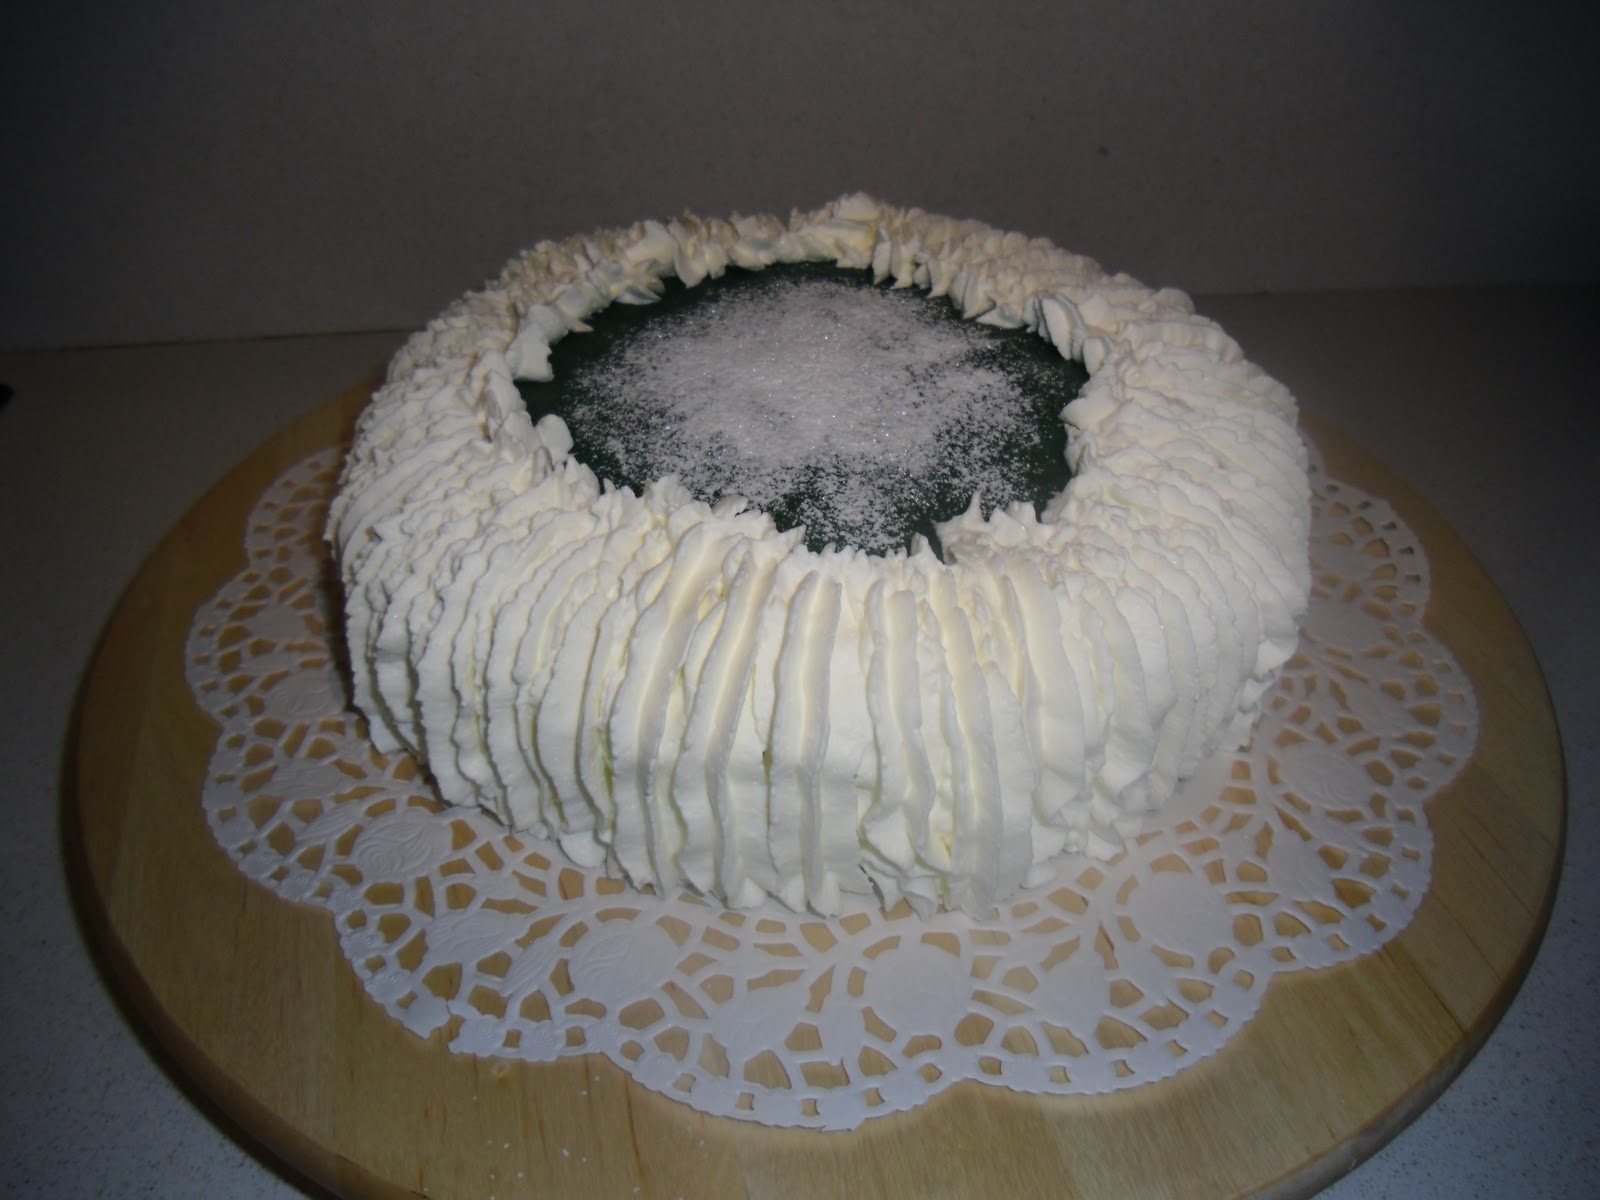 Oh My Cake: Tarta de cumpleaños